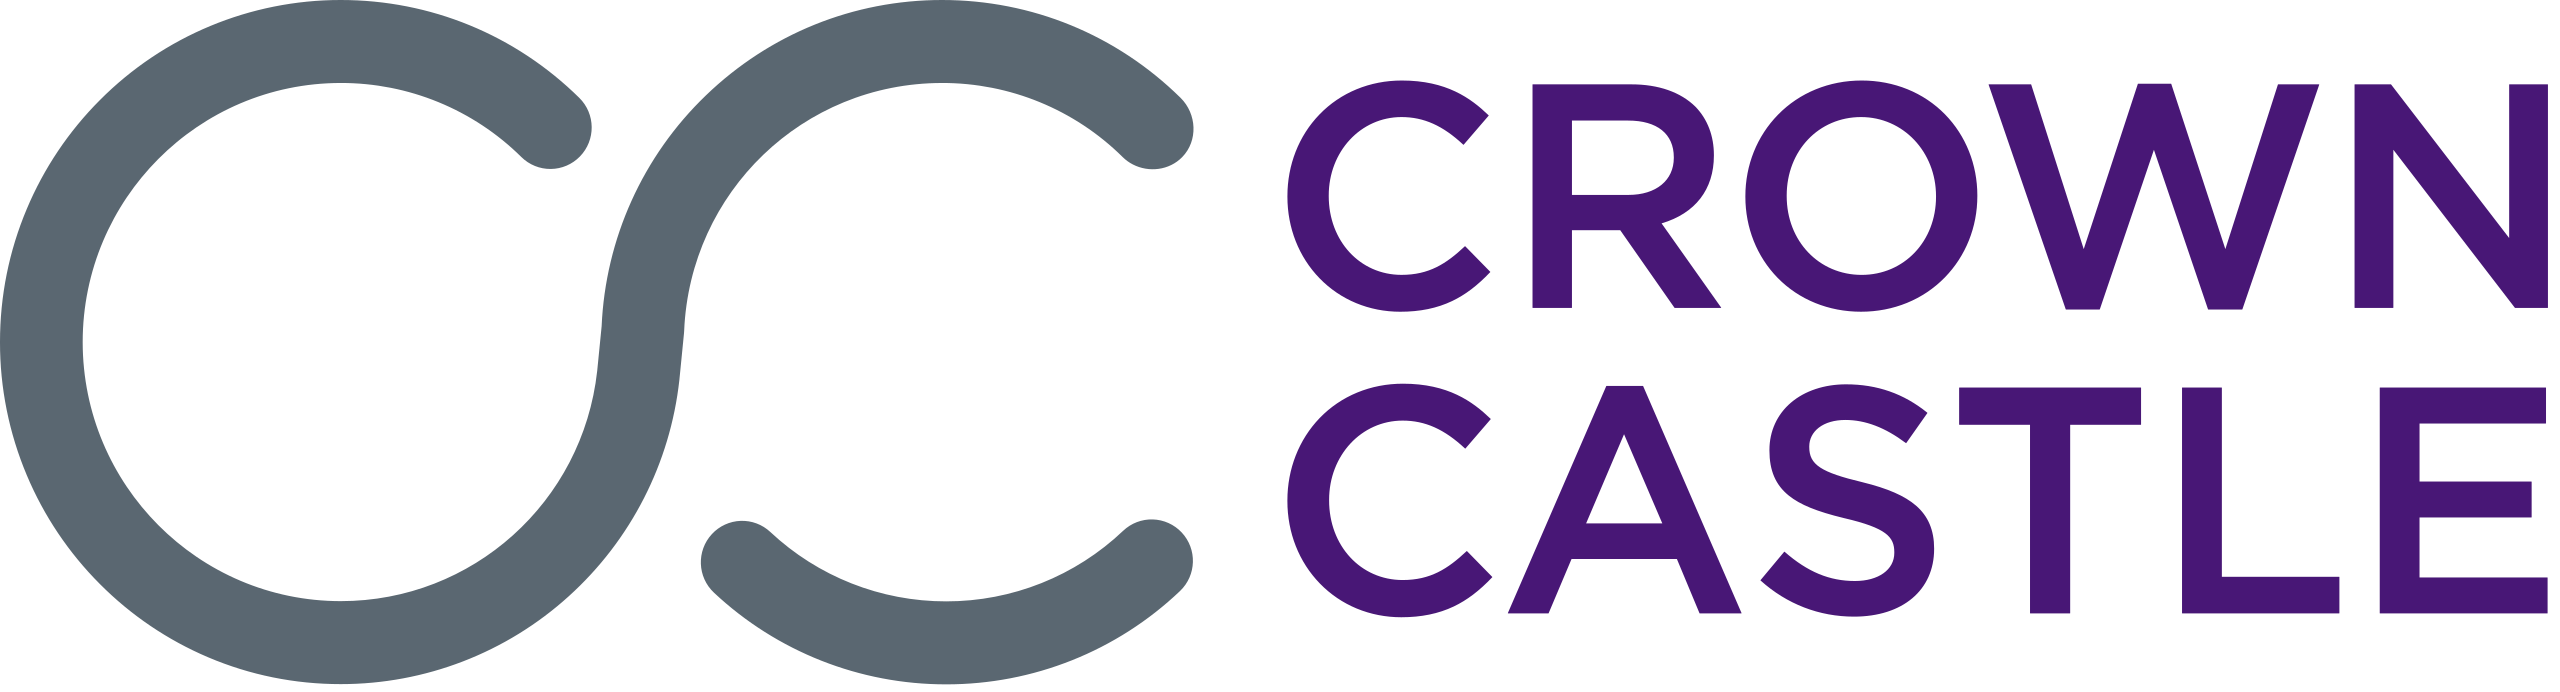 crown-castle-logo.png